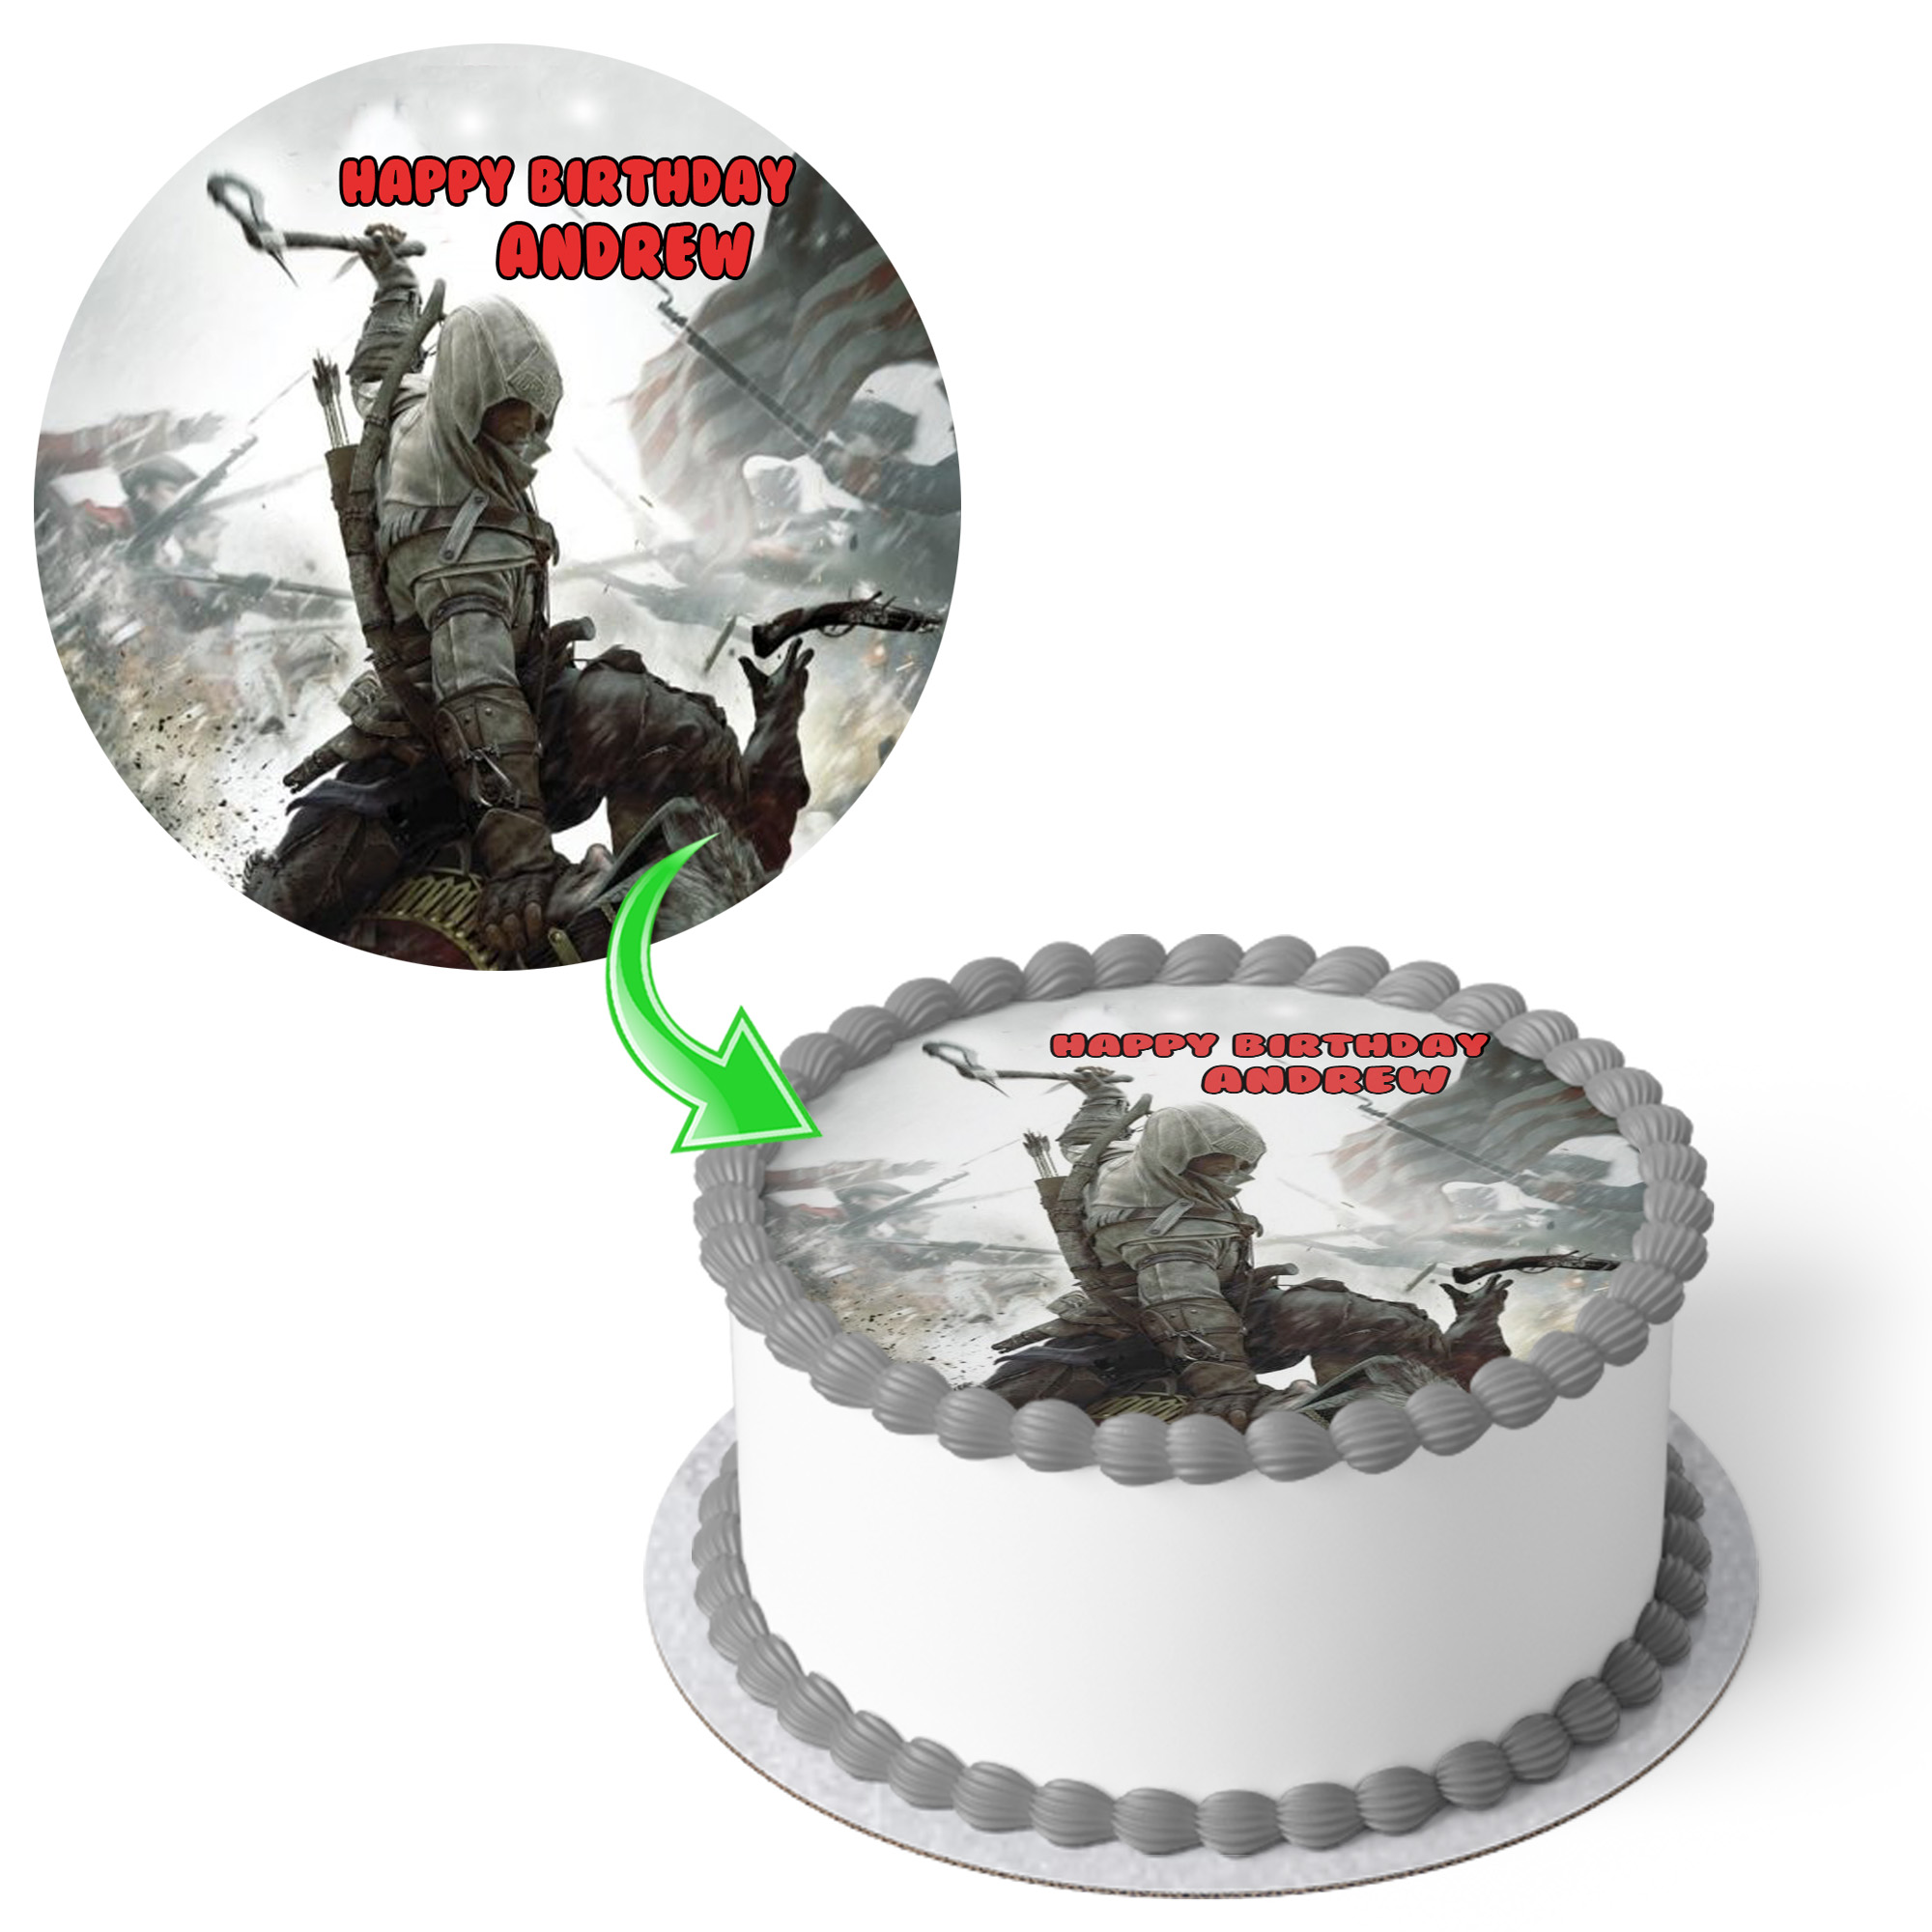 Assassin creeds cake